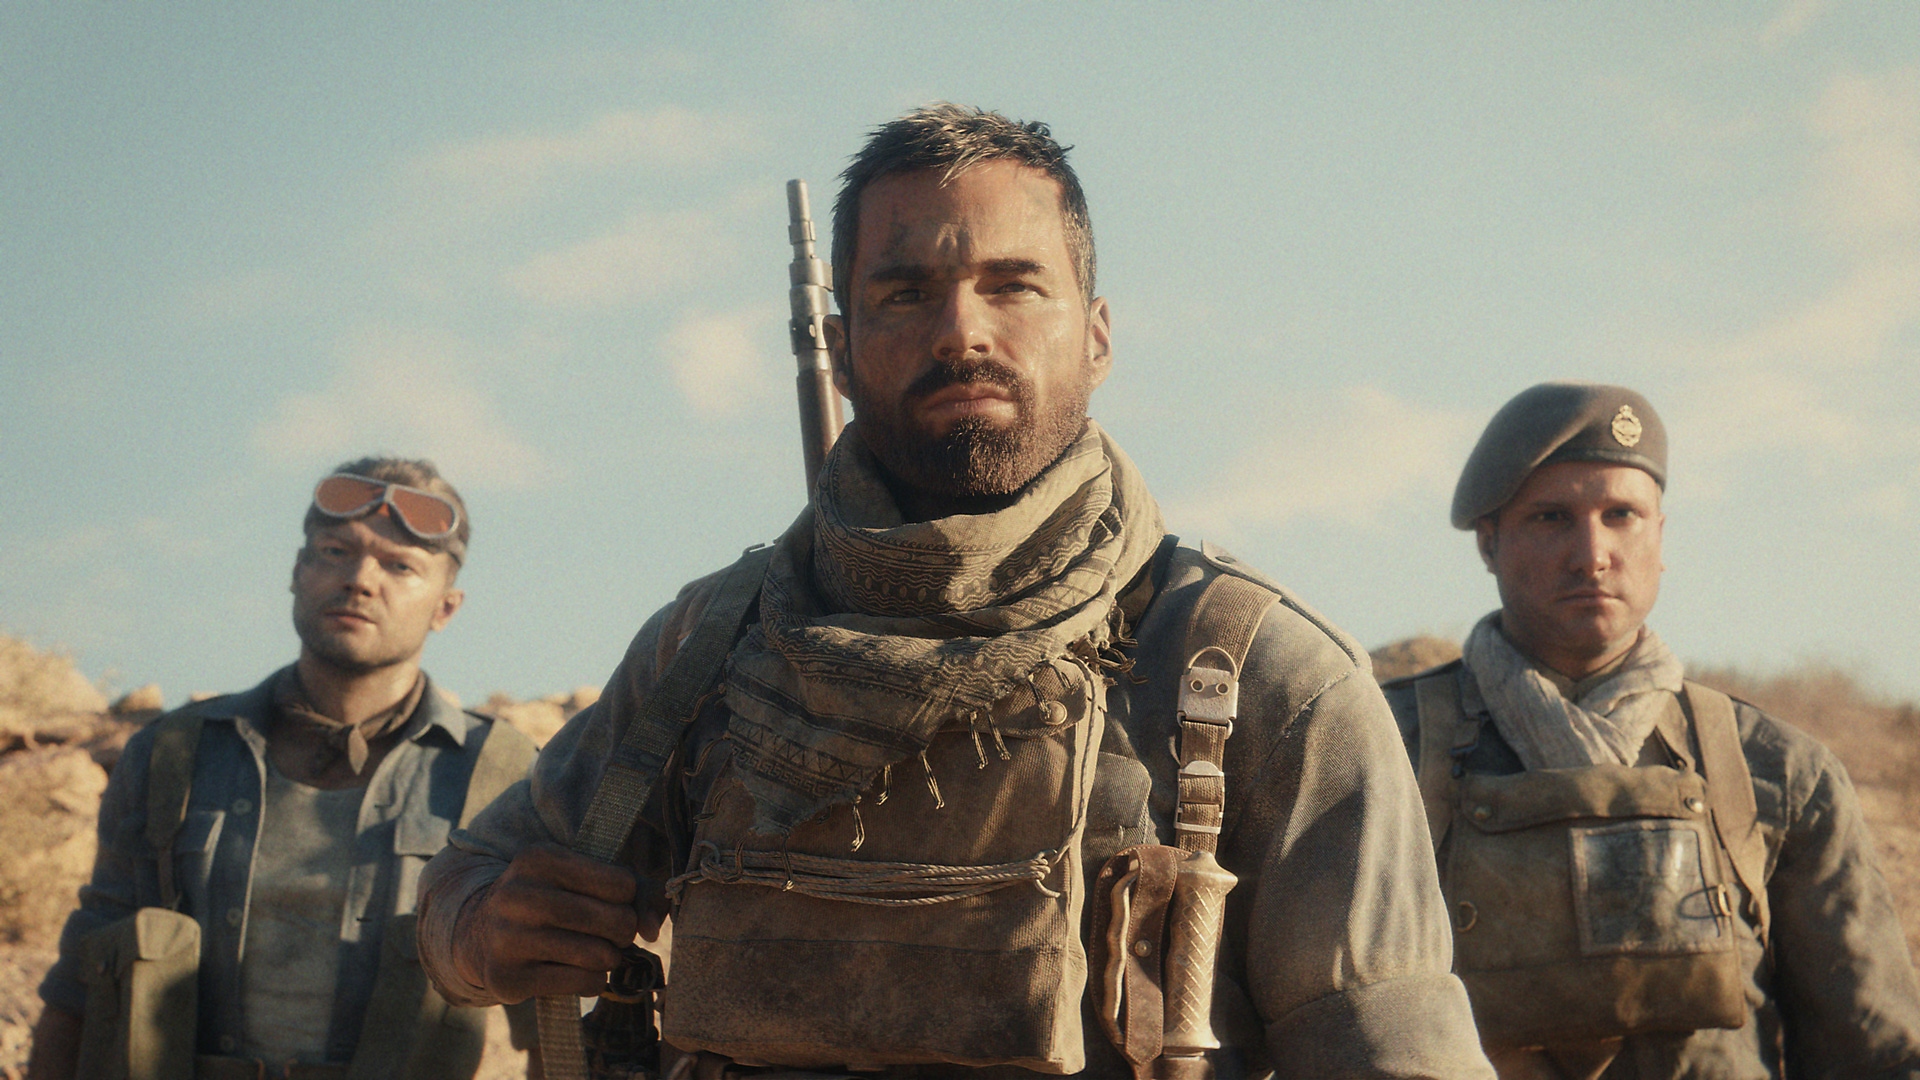 Call of Duty Vanguard – снимок экрана, на котором изображены три персонажа в боевом снаряжении среди пустыни